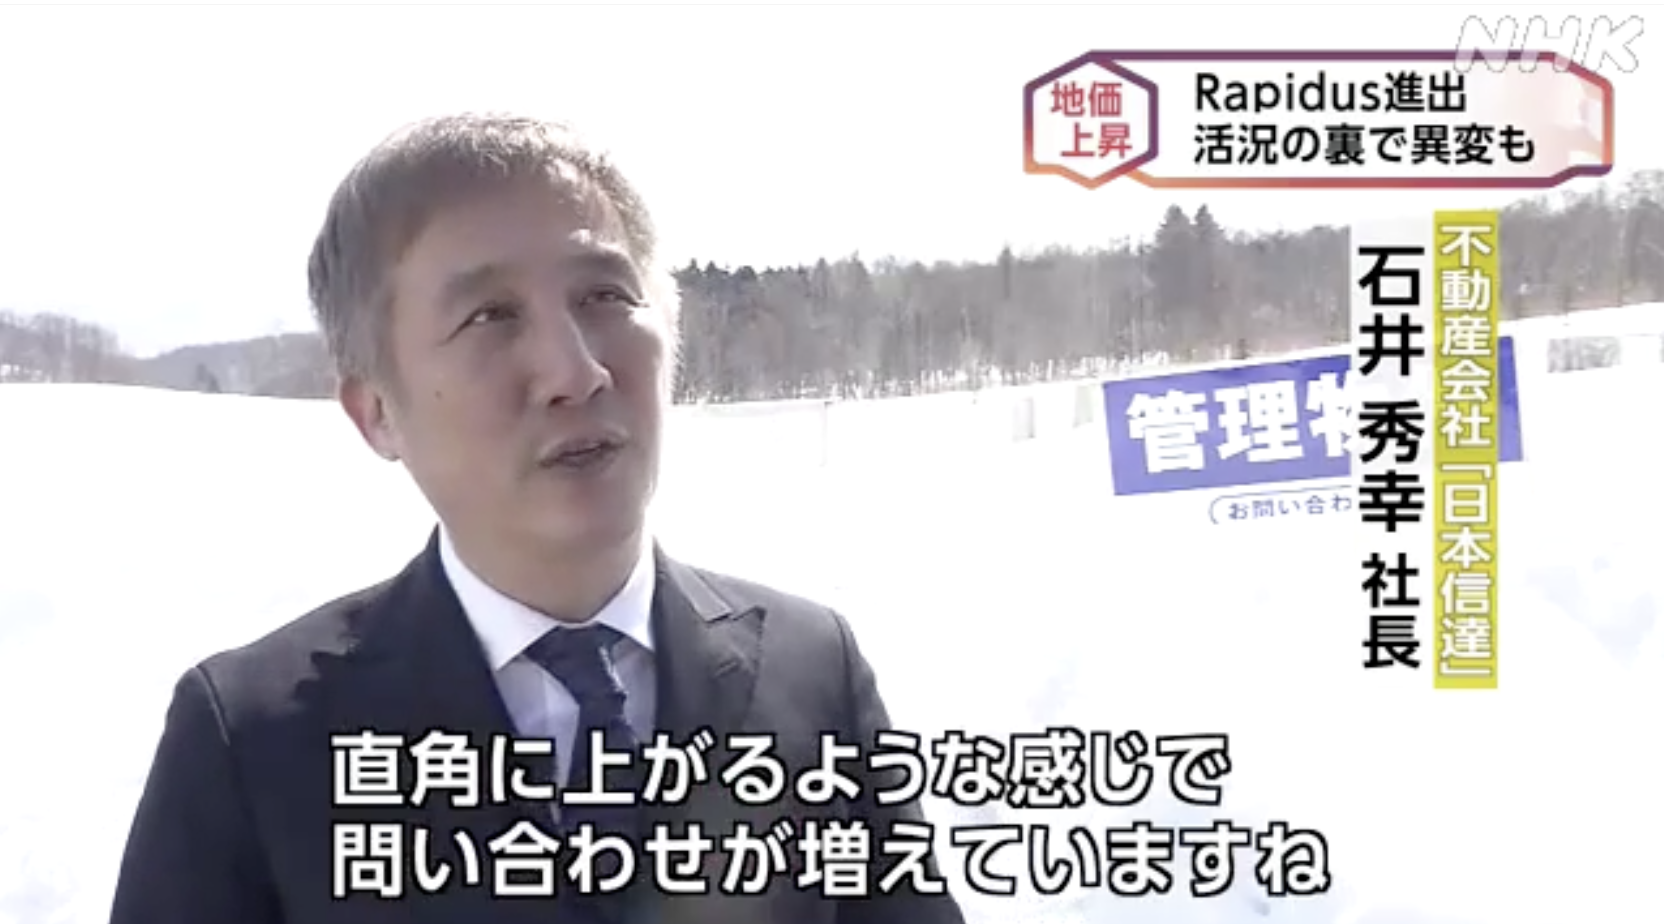 【メディア】NHK ほっとニュース北海道に出演しました